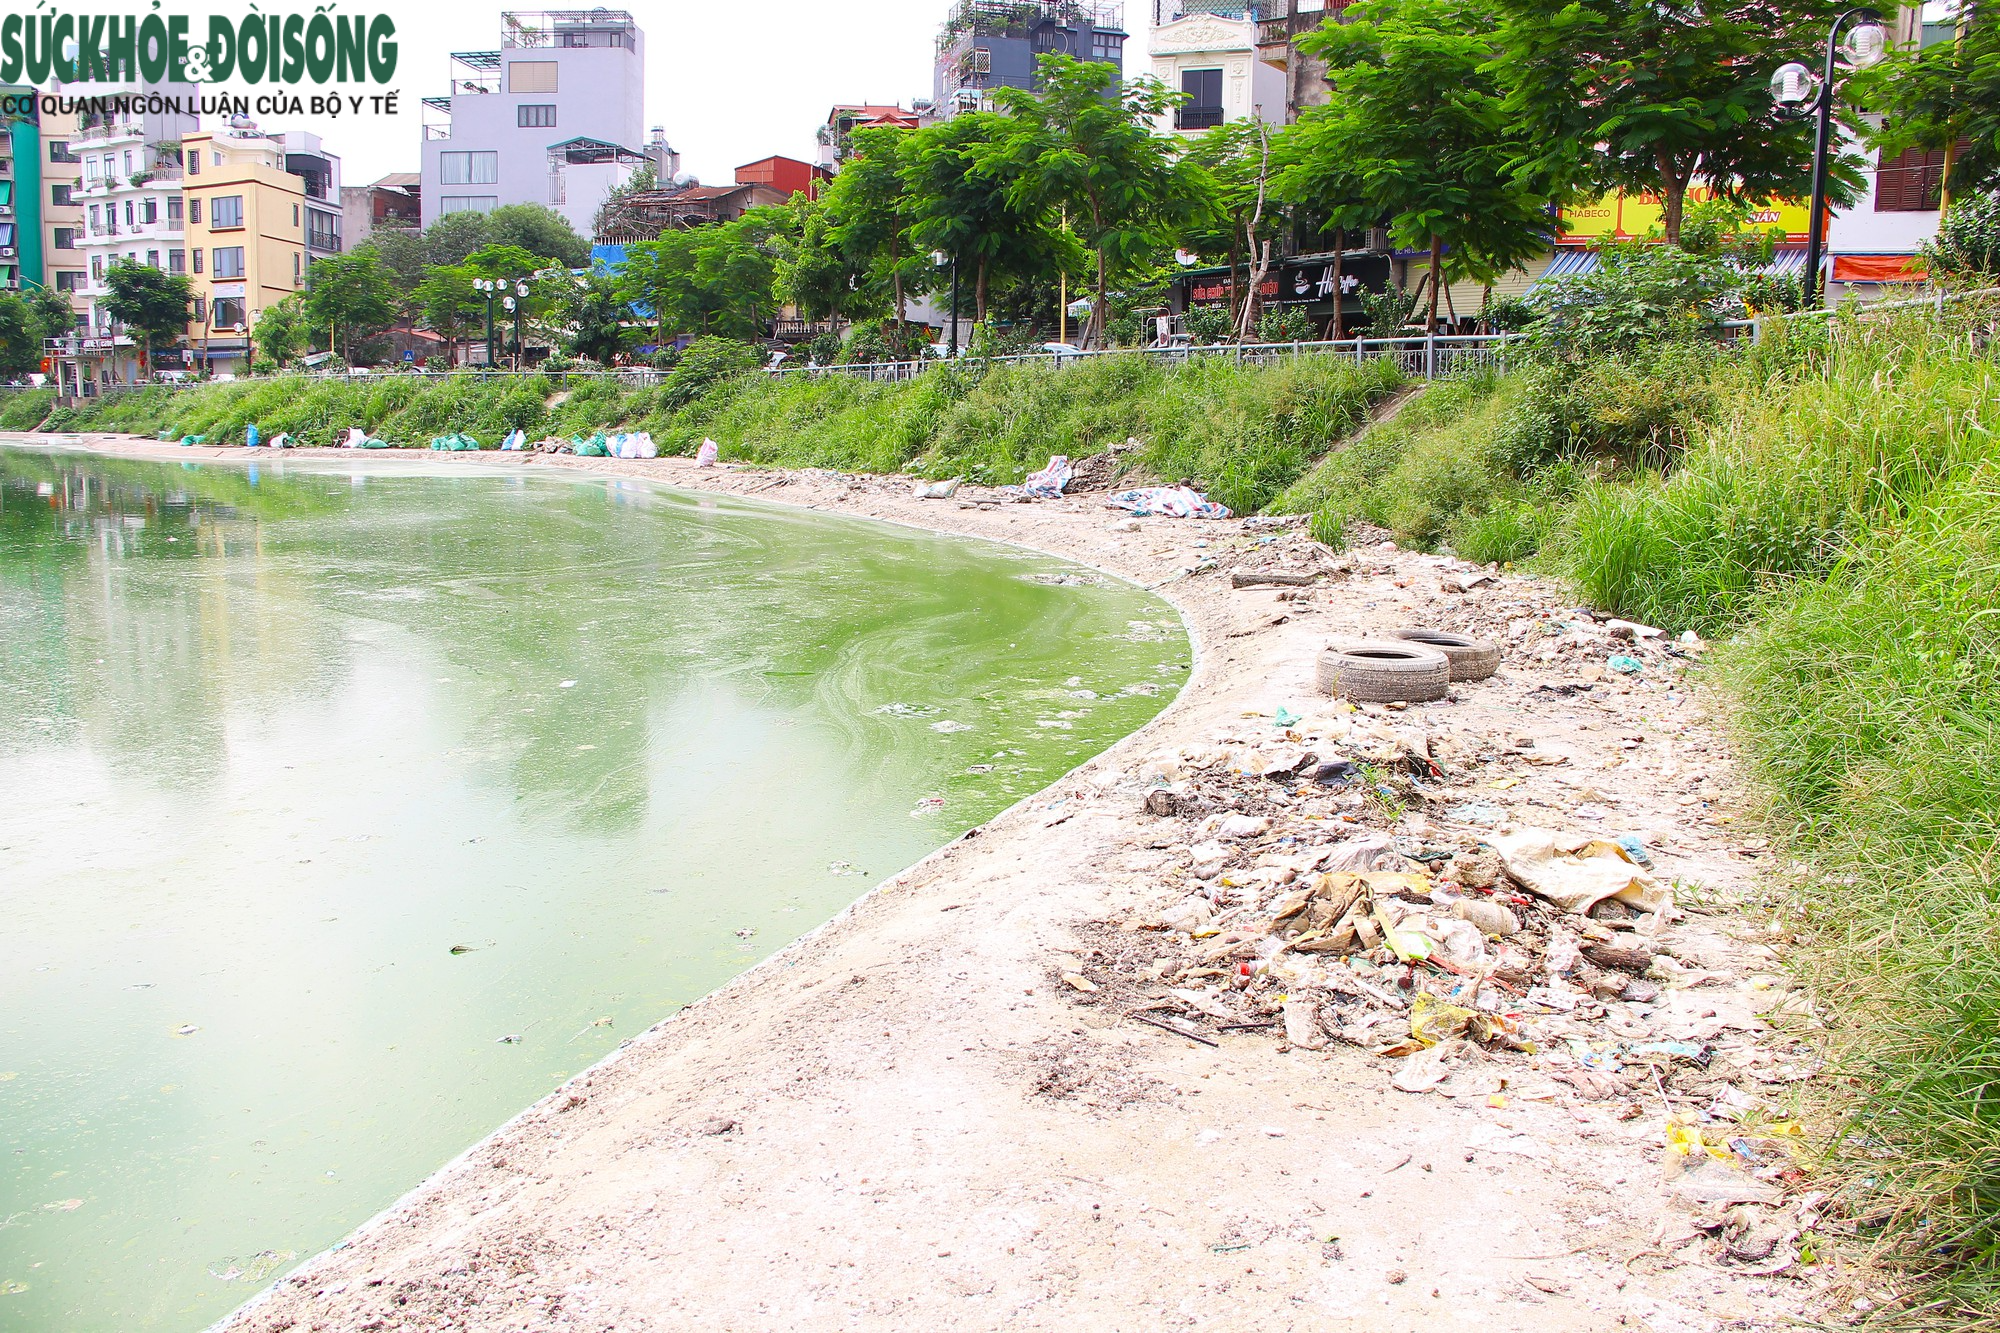 Hồ nước tại trung tâm Hà Nội ô nhiễm, mặt hồ nổi mảng bám, nước bốc mùi - Ảnh 3.